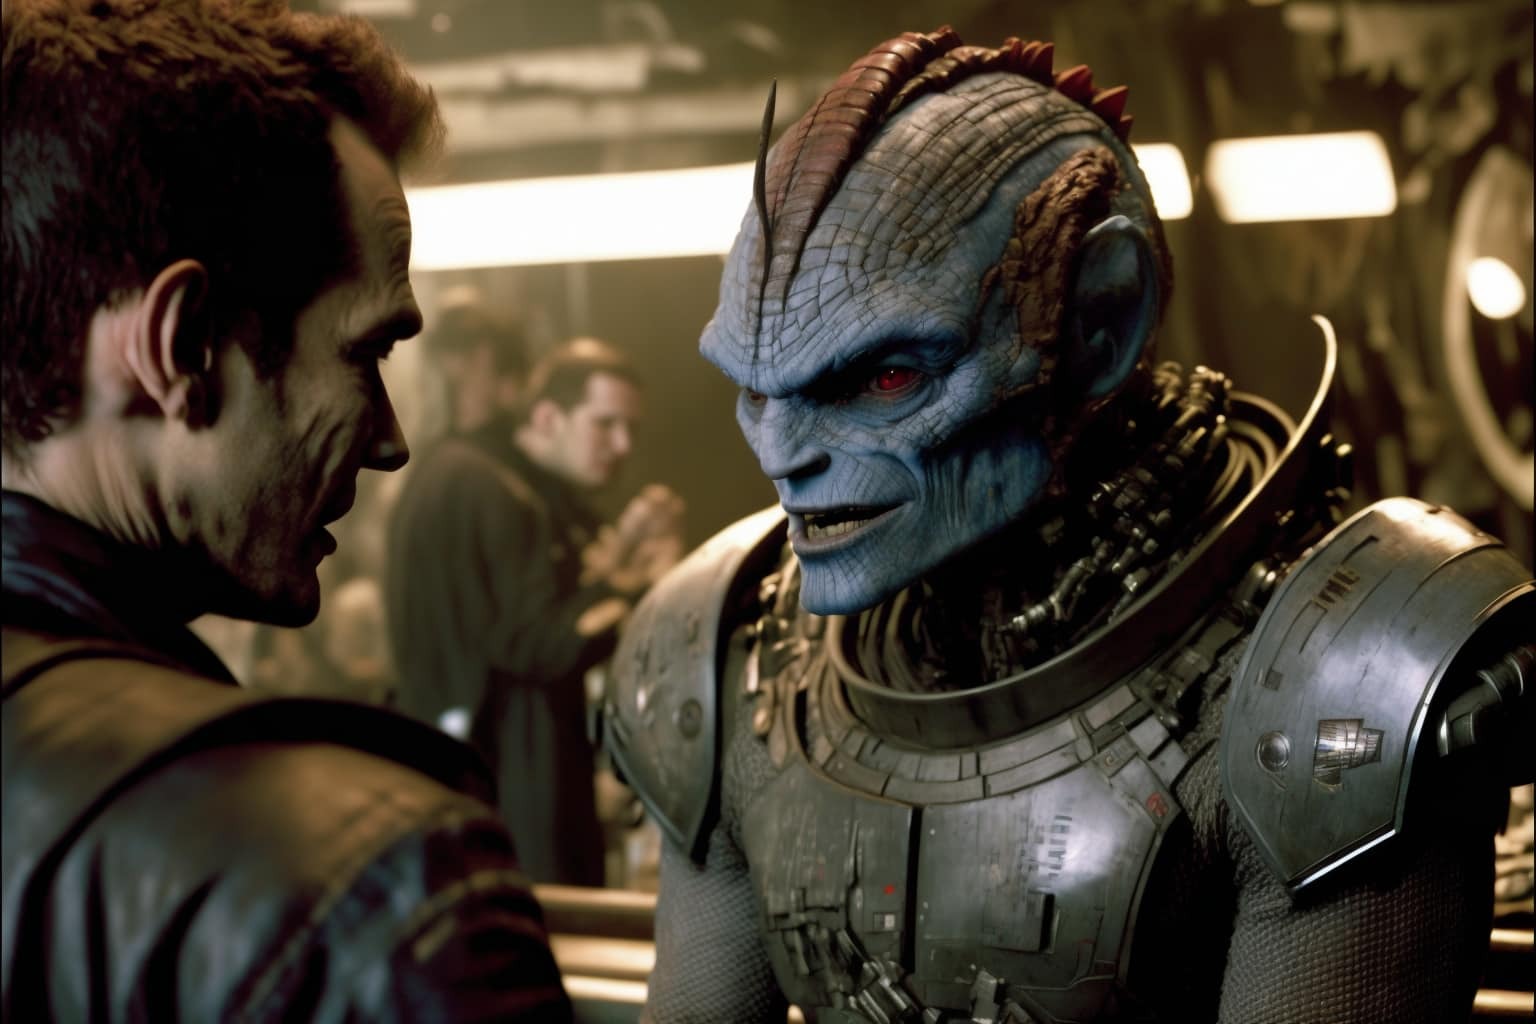 Mass Effect by James Gunn and Neural Networks - Midjourney, Нейронные сети, Mass effect, Games, Art, Longpost